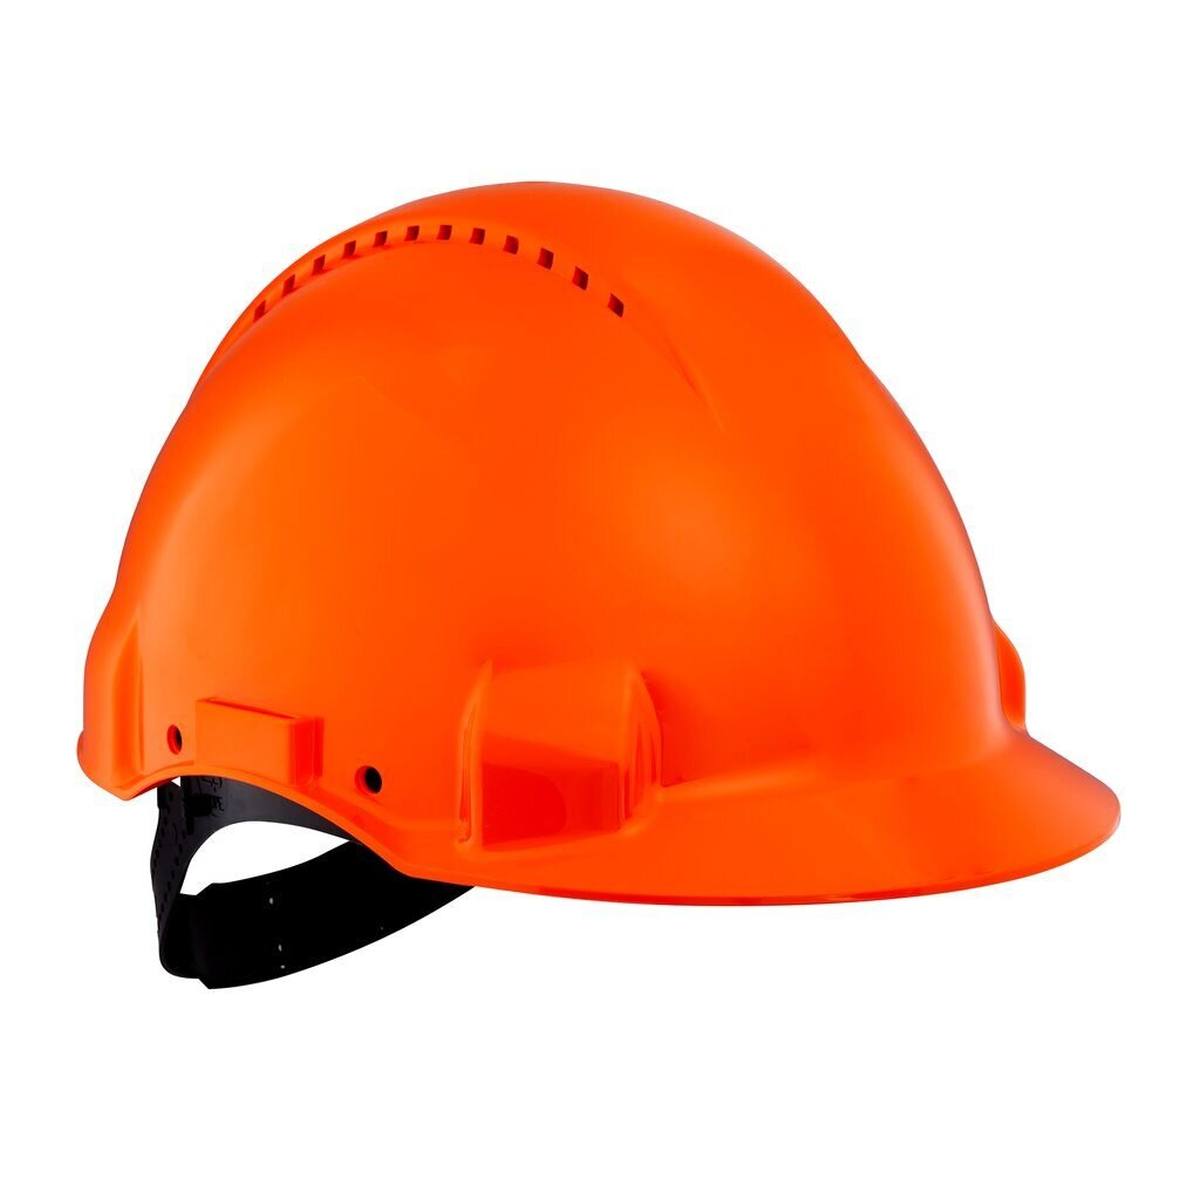 3M G3000 casque de protection G30CUO en orange, ventilé, avec uvicator, pinlock et bande de soudure en plastique